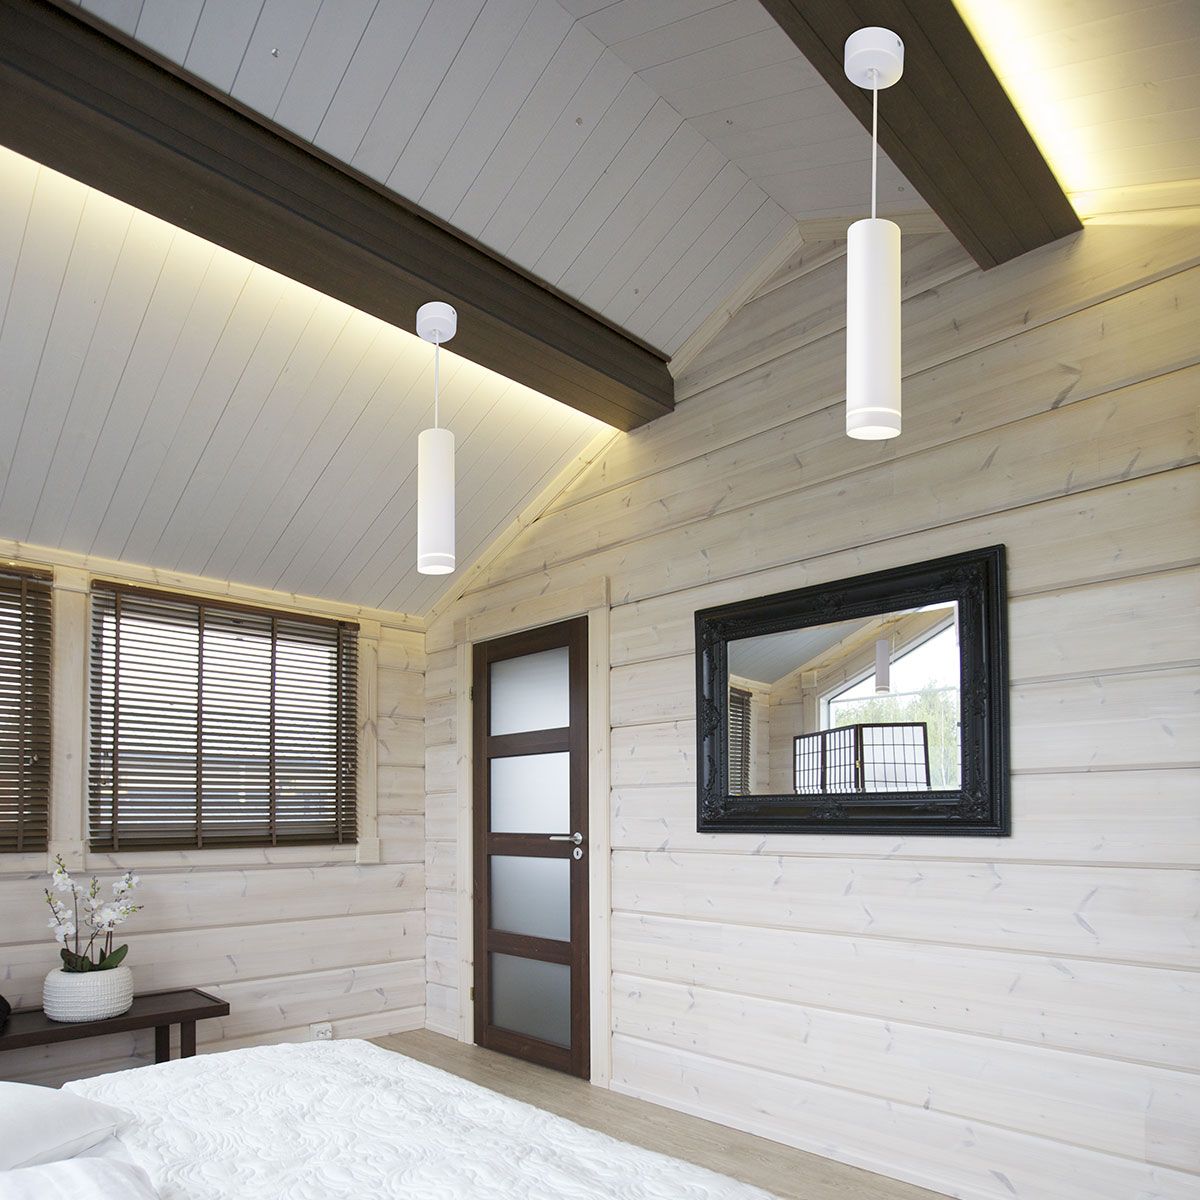 Светильники для низких потолков в деревянном доме фото